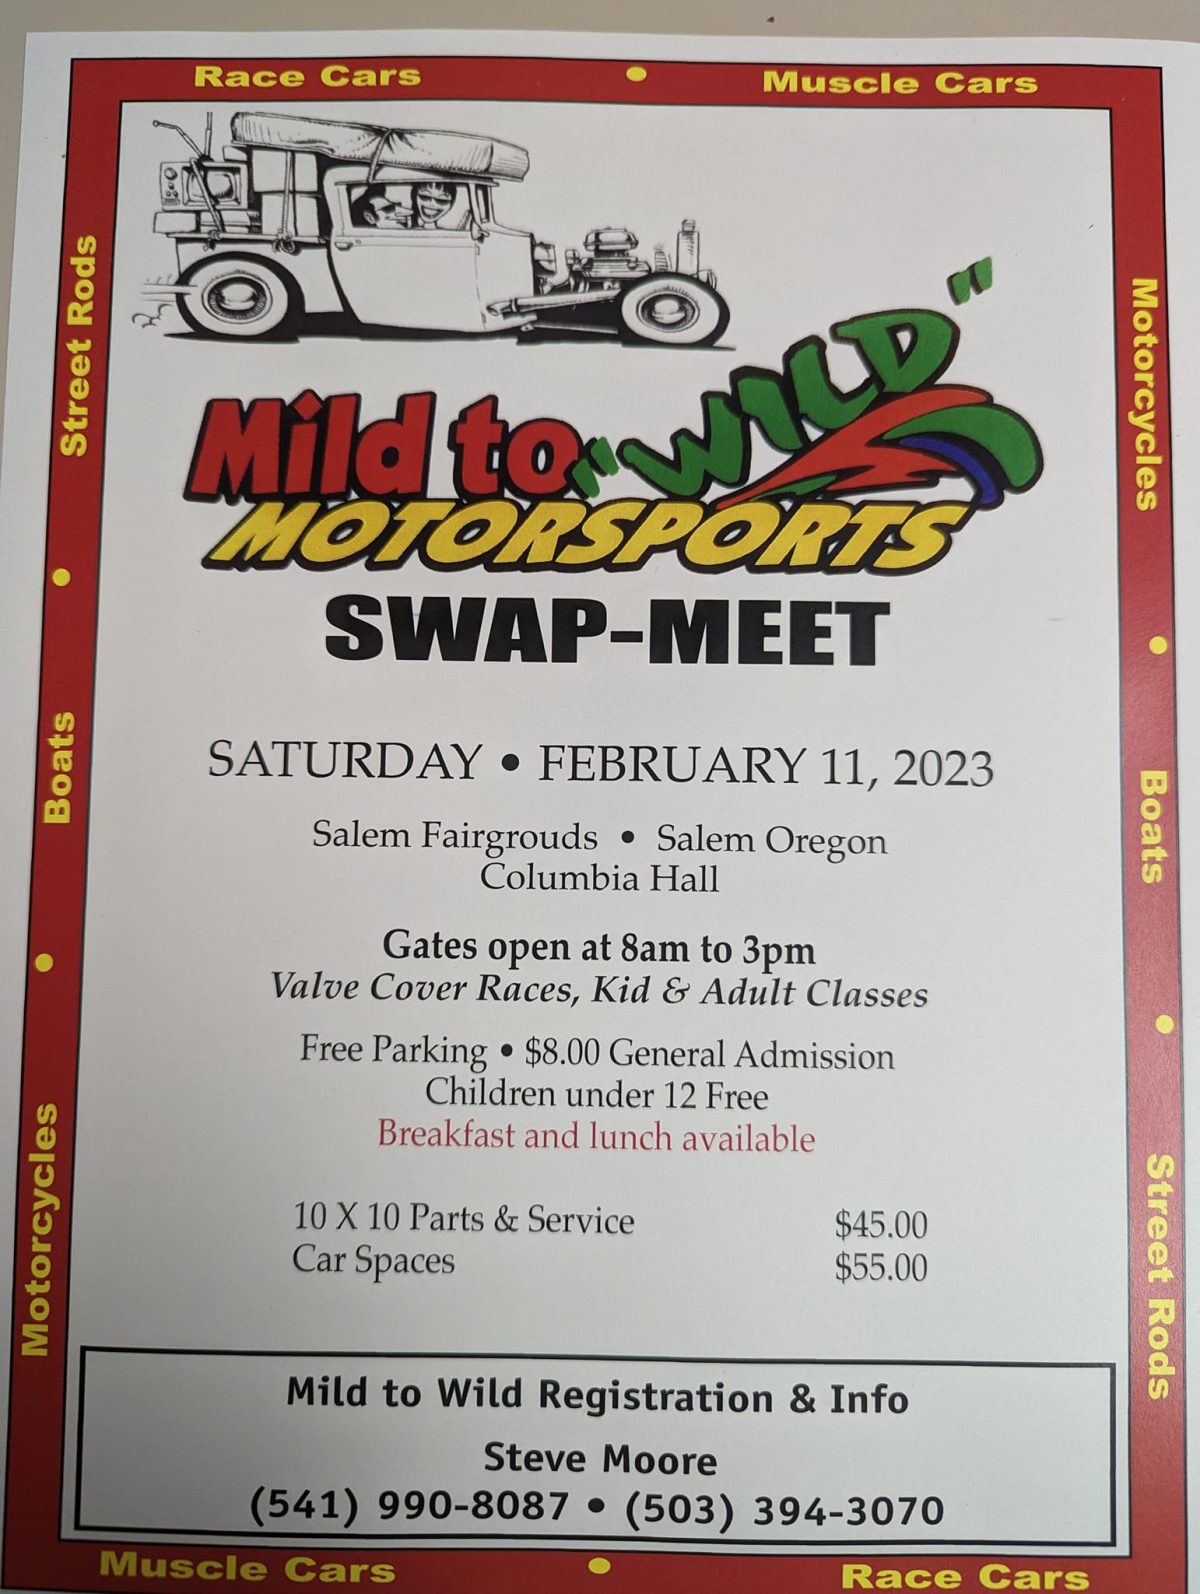 Mild to Wild Motorsports Swap Meet